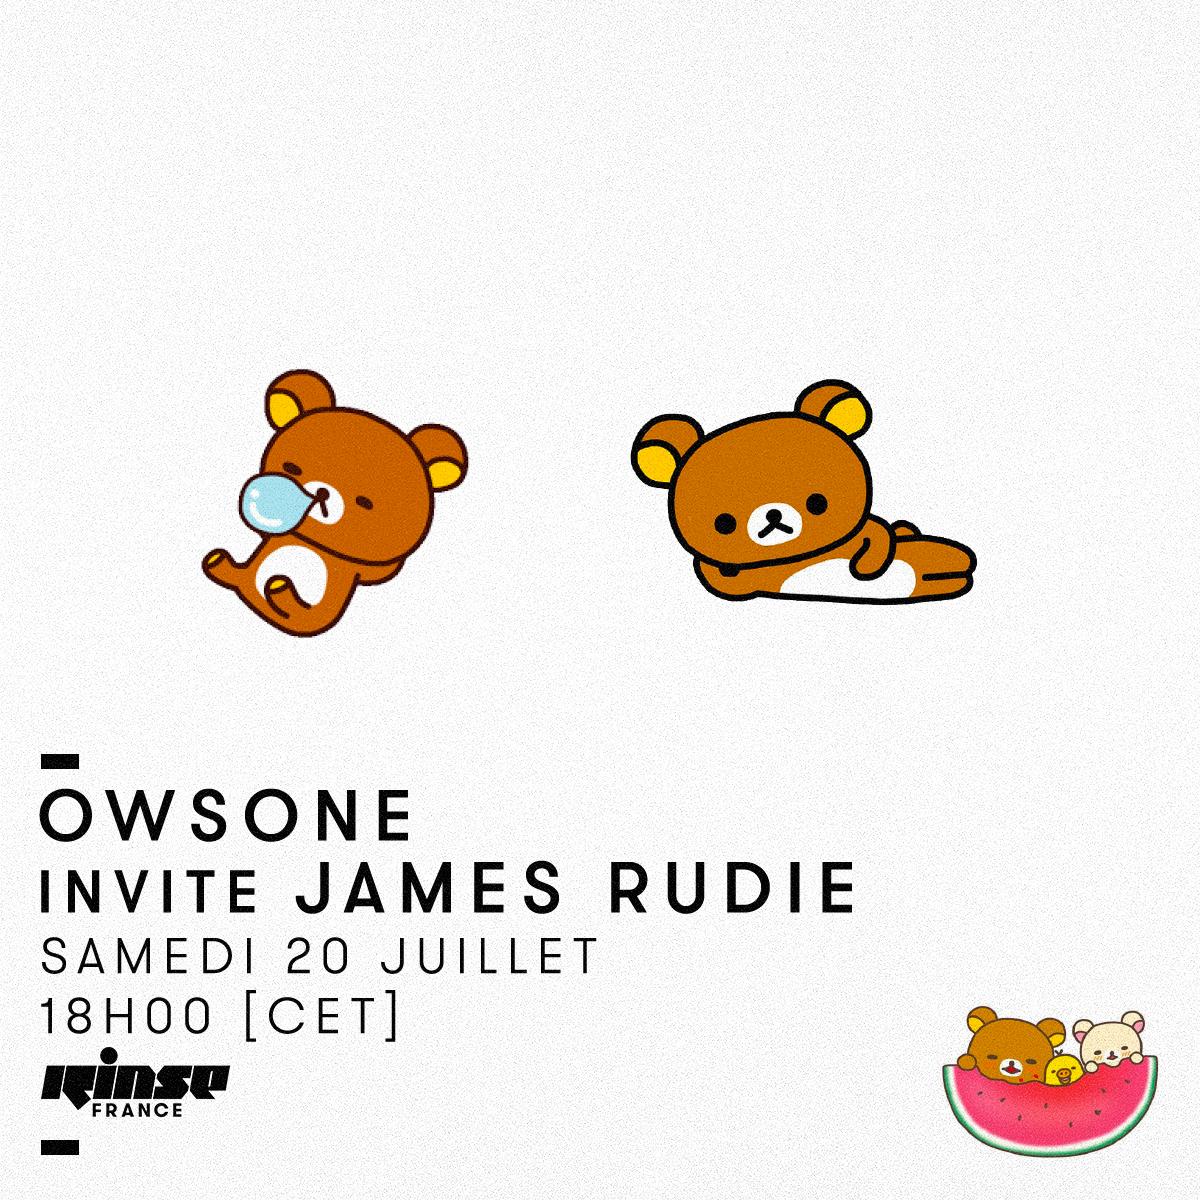 #Owsone prends le contrôle de la radio jusqu'à 20h en compagnie de son invité #JamesRudie !

🎶
- soundcloud.com/james_rudie

Retrouvez toutes ses anciennes émissions juste ici >>>
rinse.fr/?s=Owsone

#verrouillé 🔒 >>> rinse.fr/player